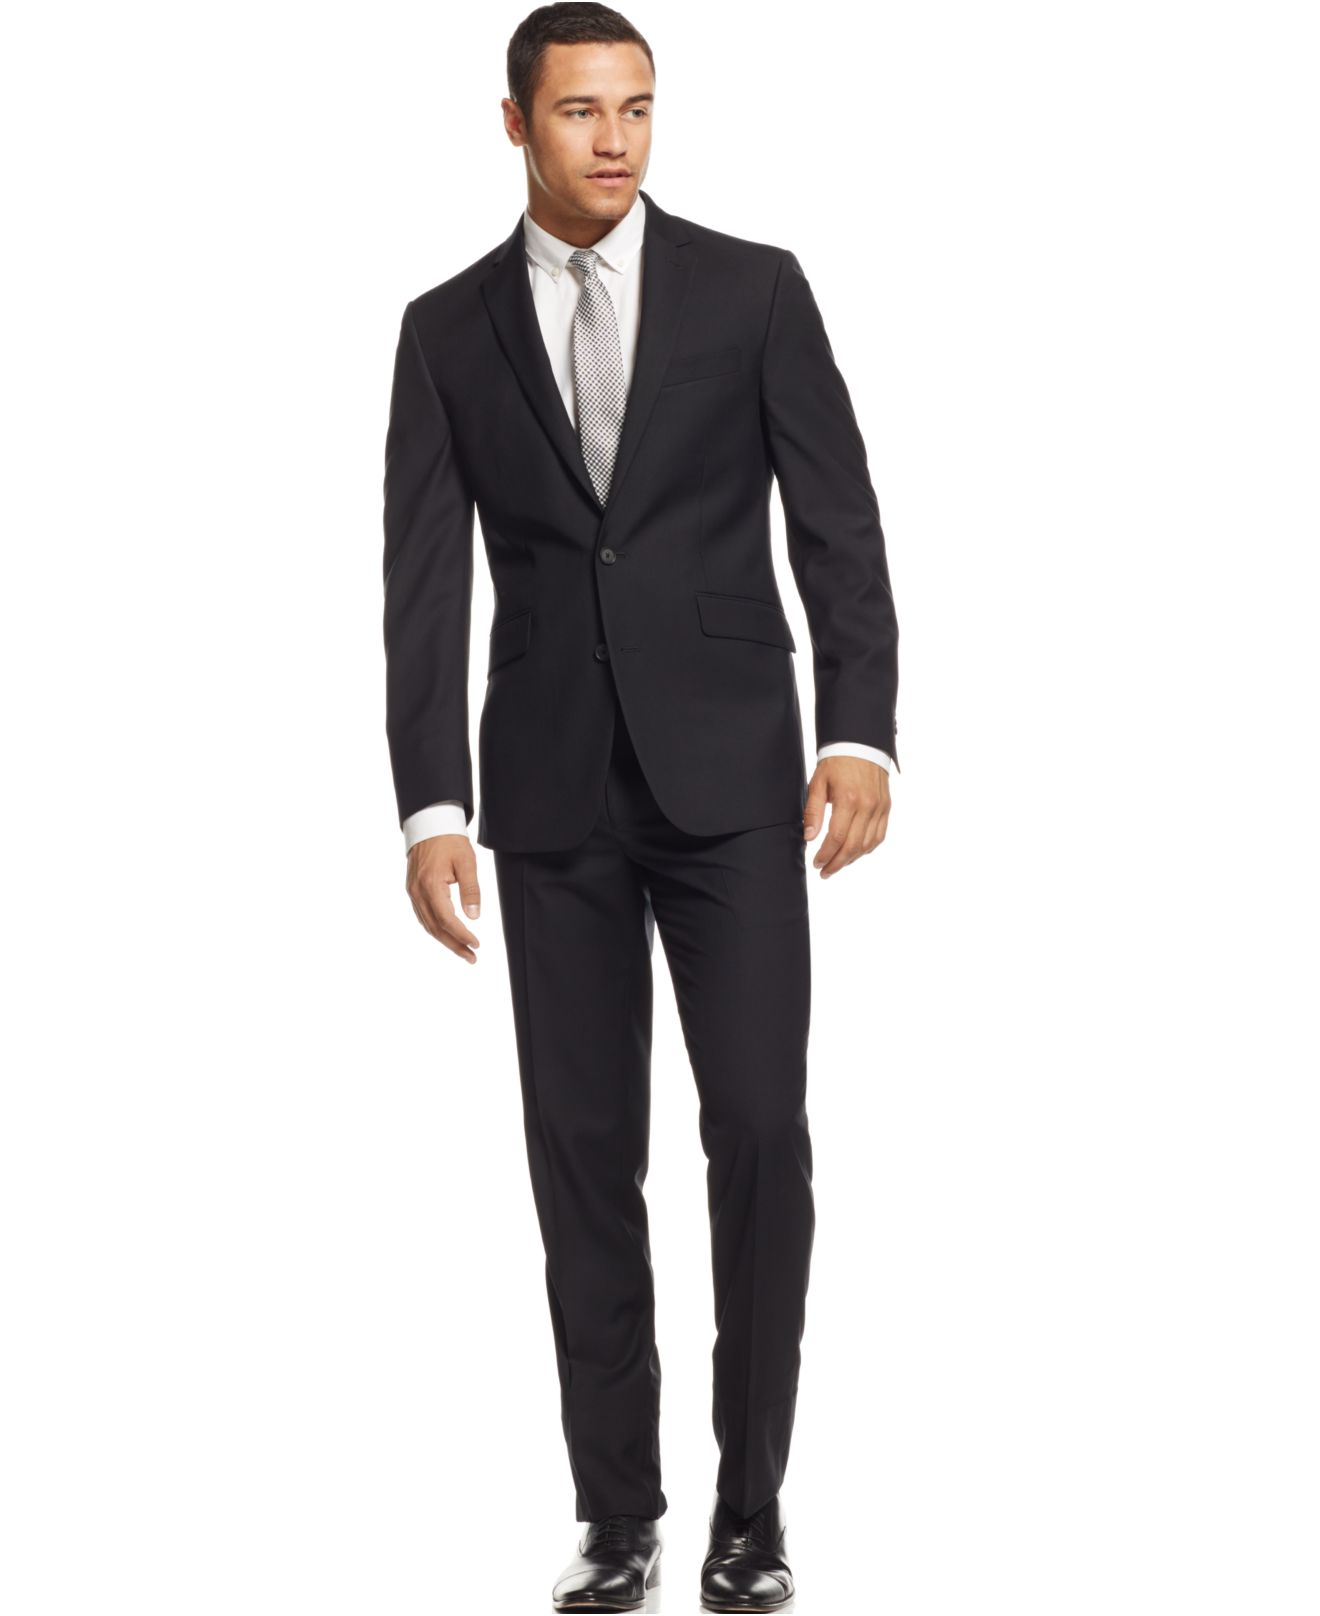 Lyst - Kenneth Cole Reaction Black Stripe Slim-fit Suit in Black for Men